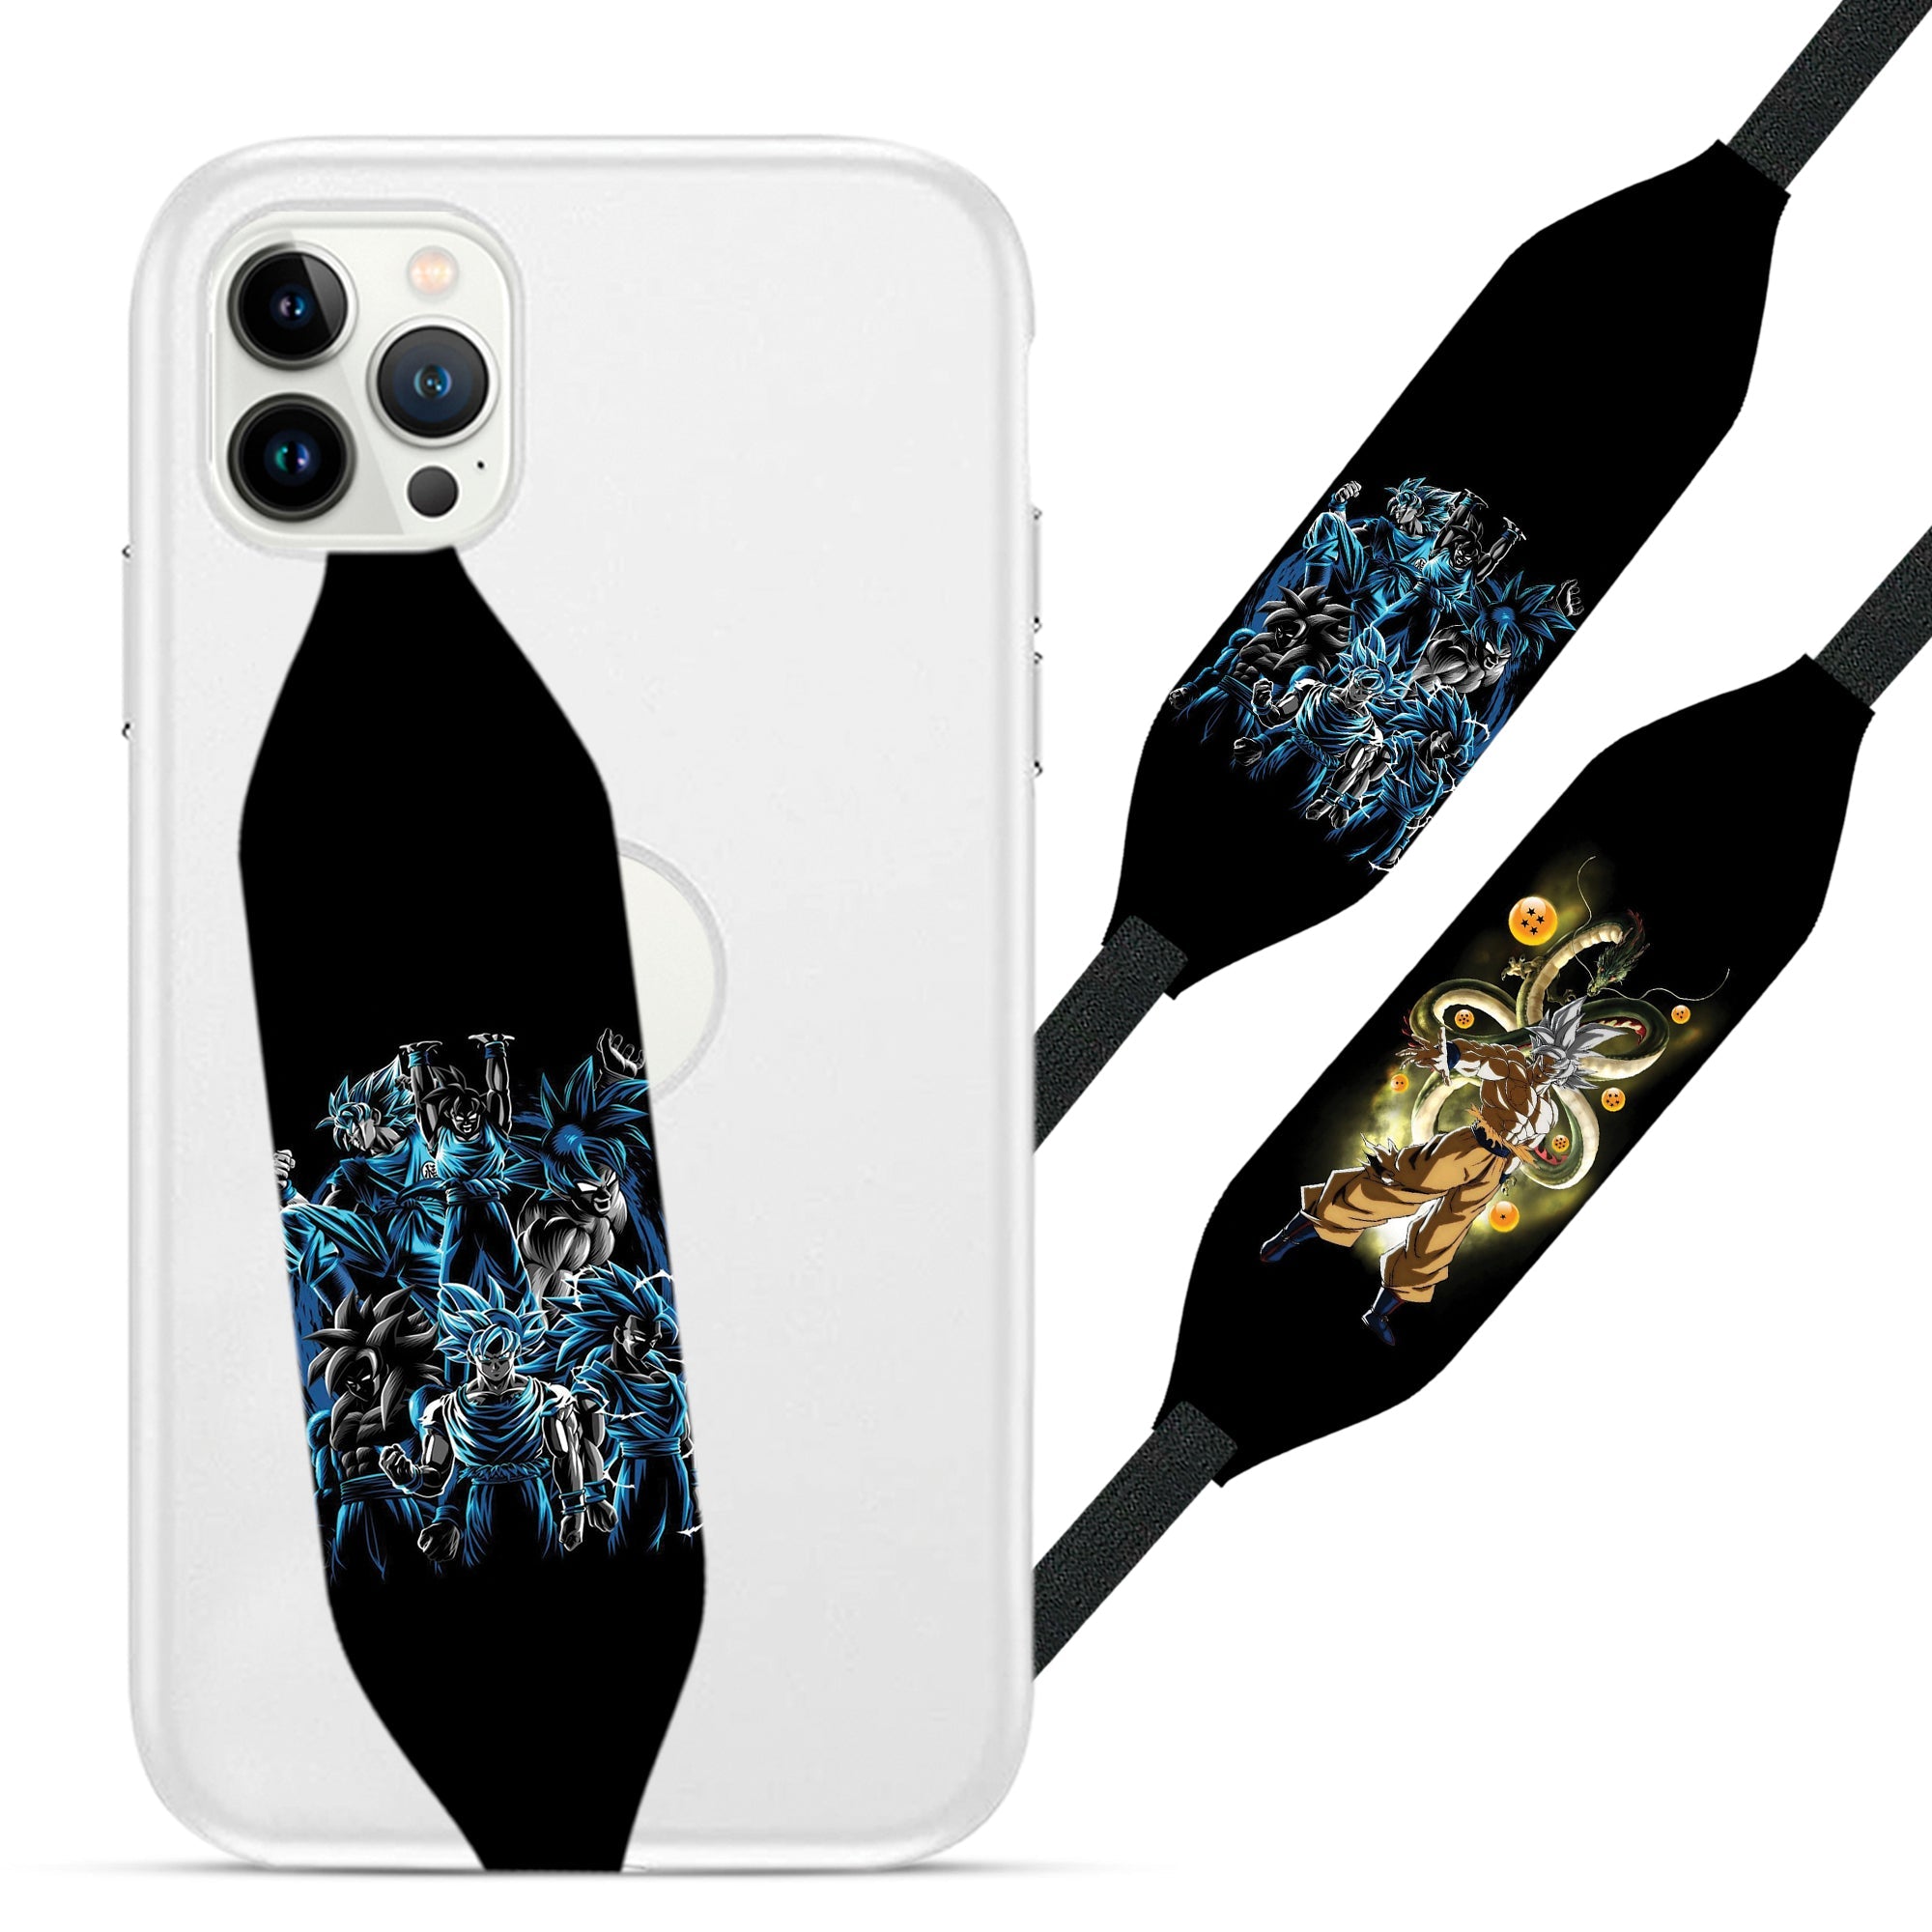 Universal Phone Grip Strap - Dragon Ball Z